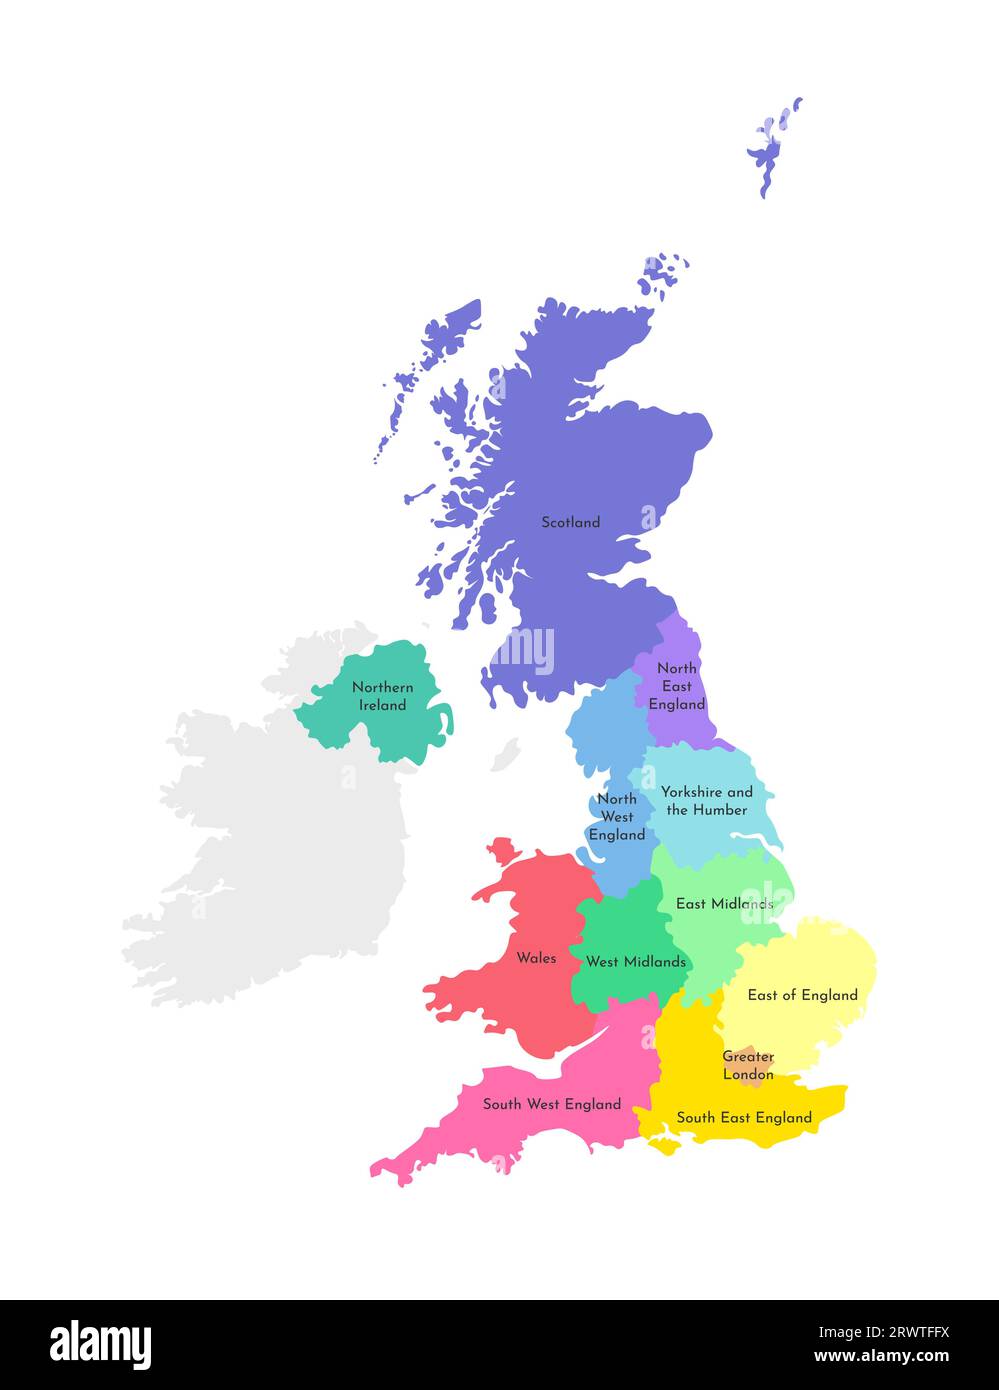 Illustrazione vettoriale isolata della mappa amministrativa semplificata del Regno Unito di Gran Bretagna e Irlanda del Nord. Confini e nomi del re Illustrazione Vettoriale